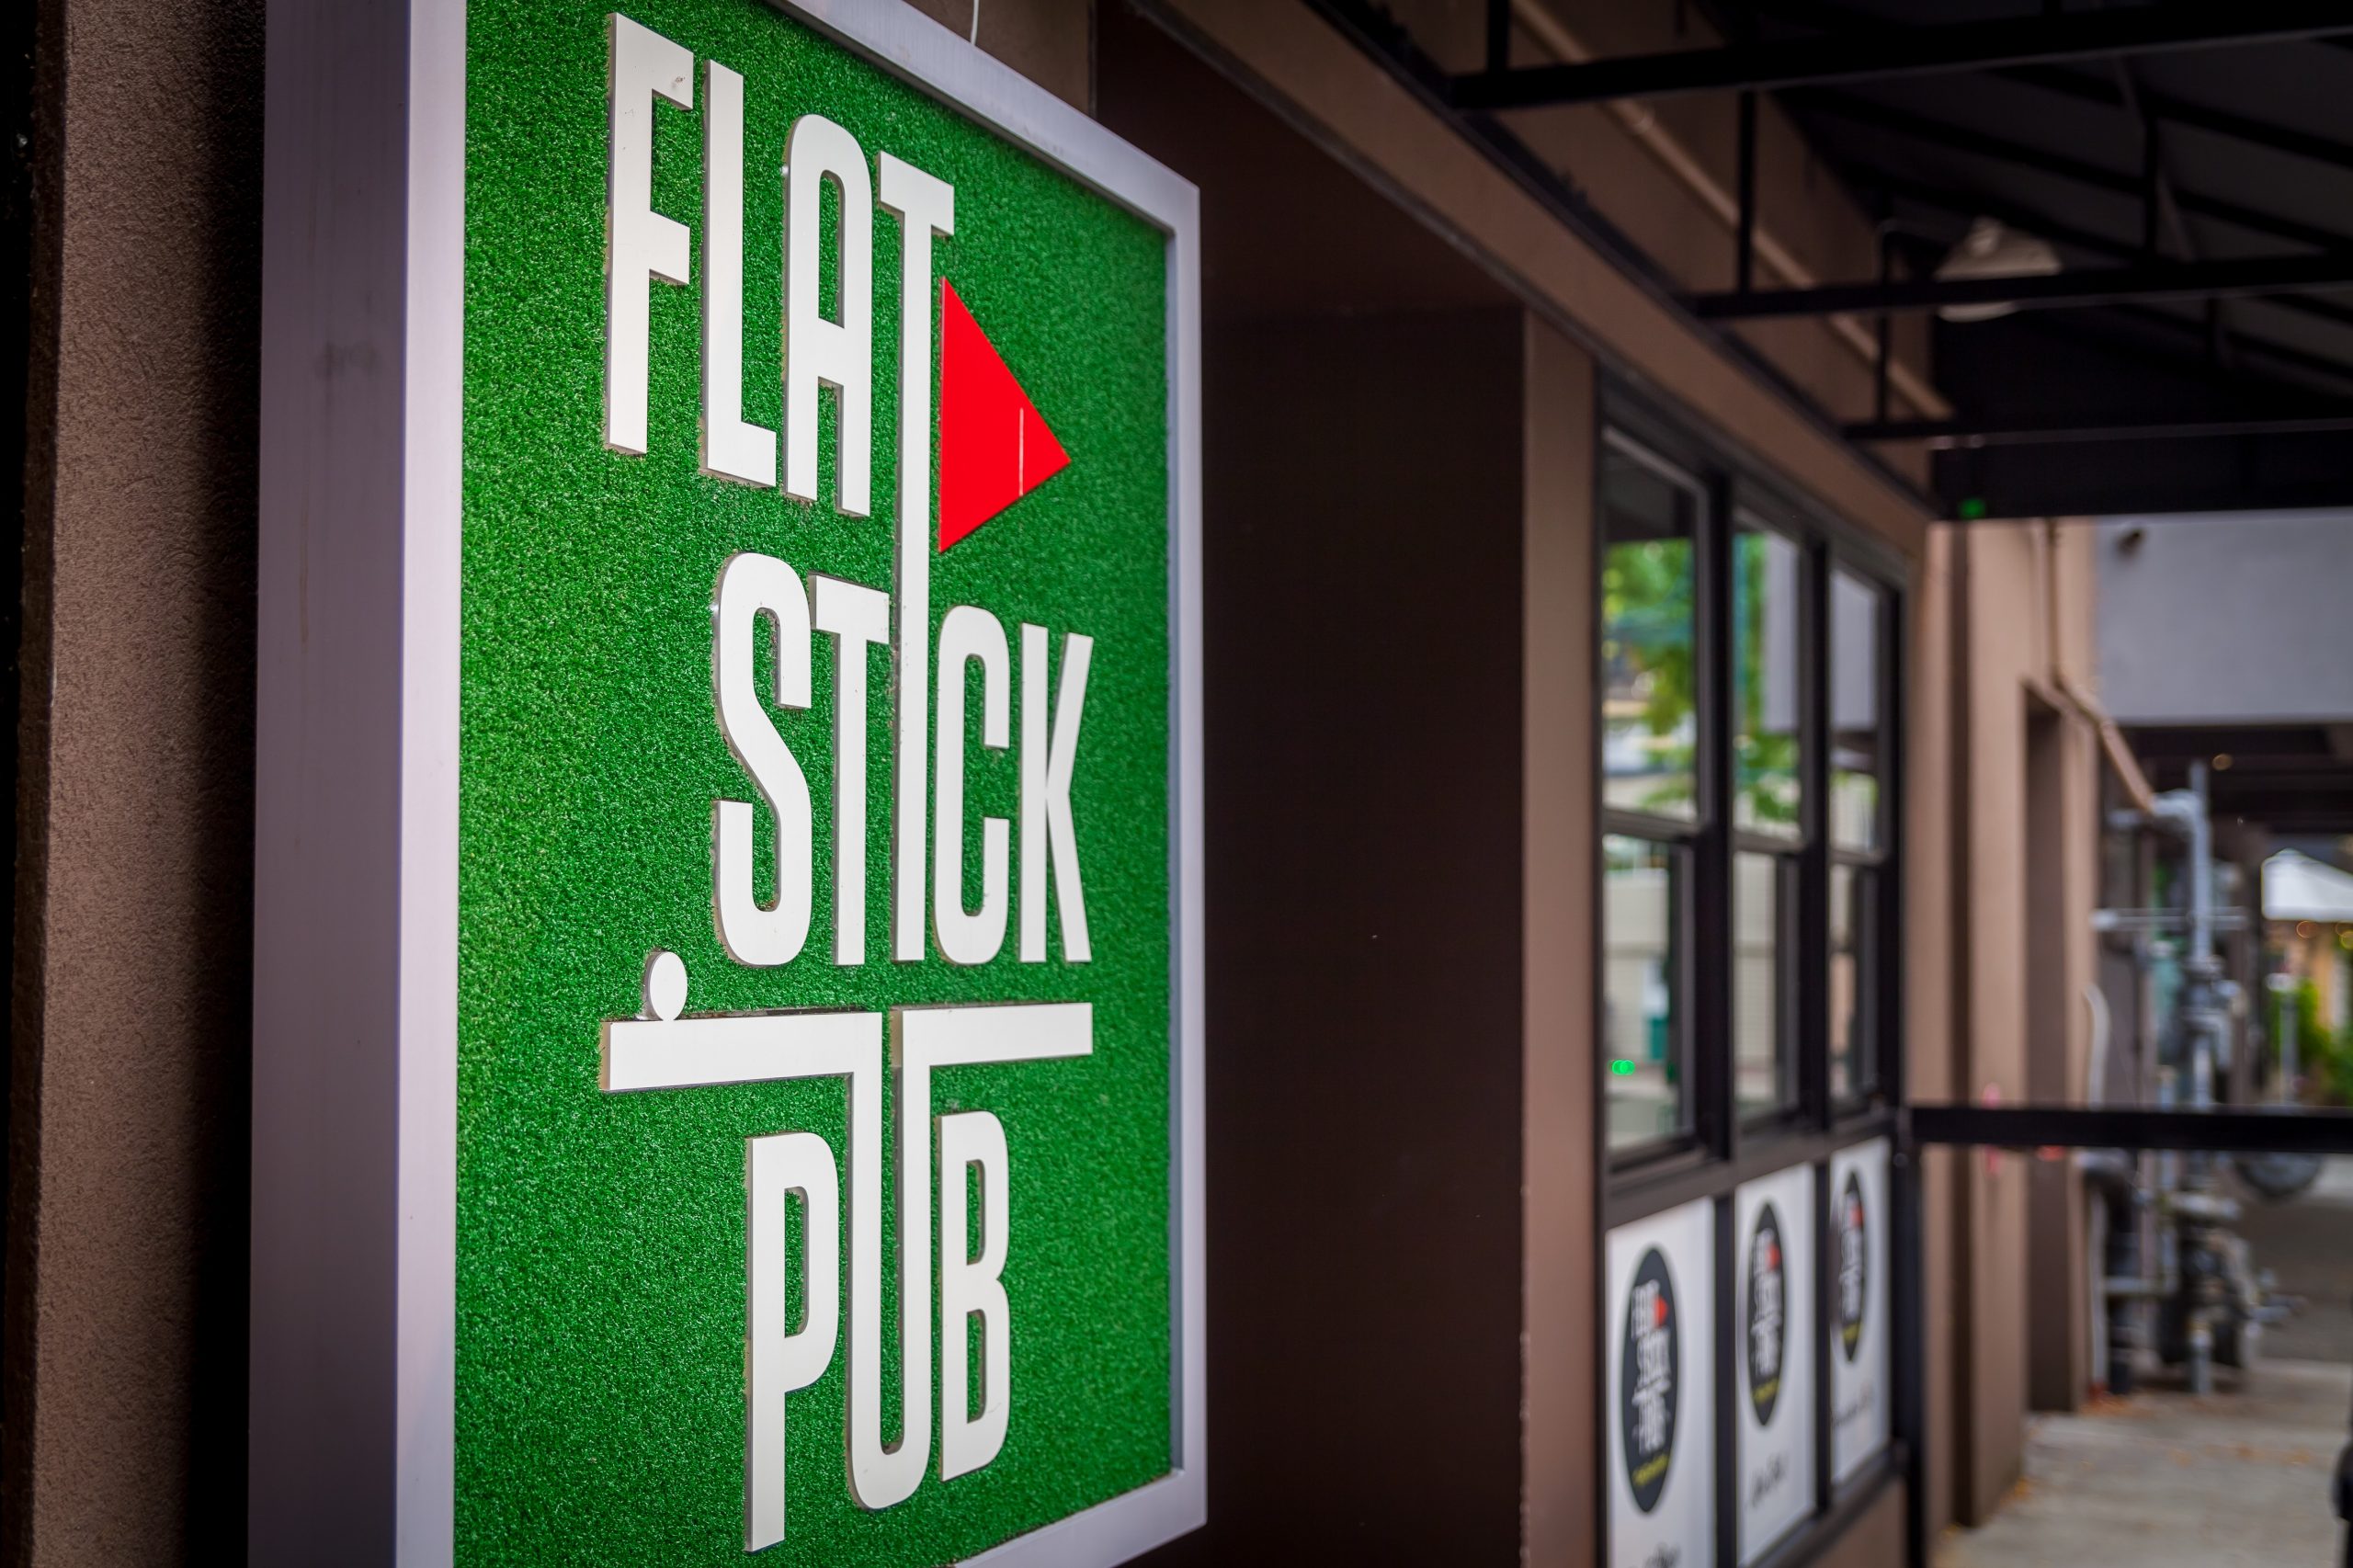 FlatStick Pub